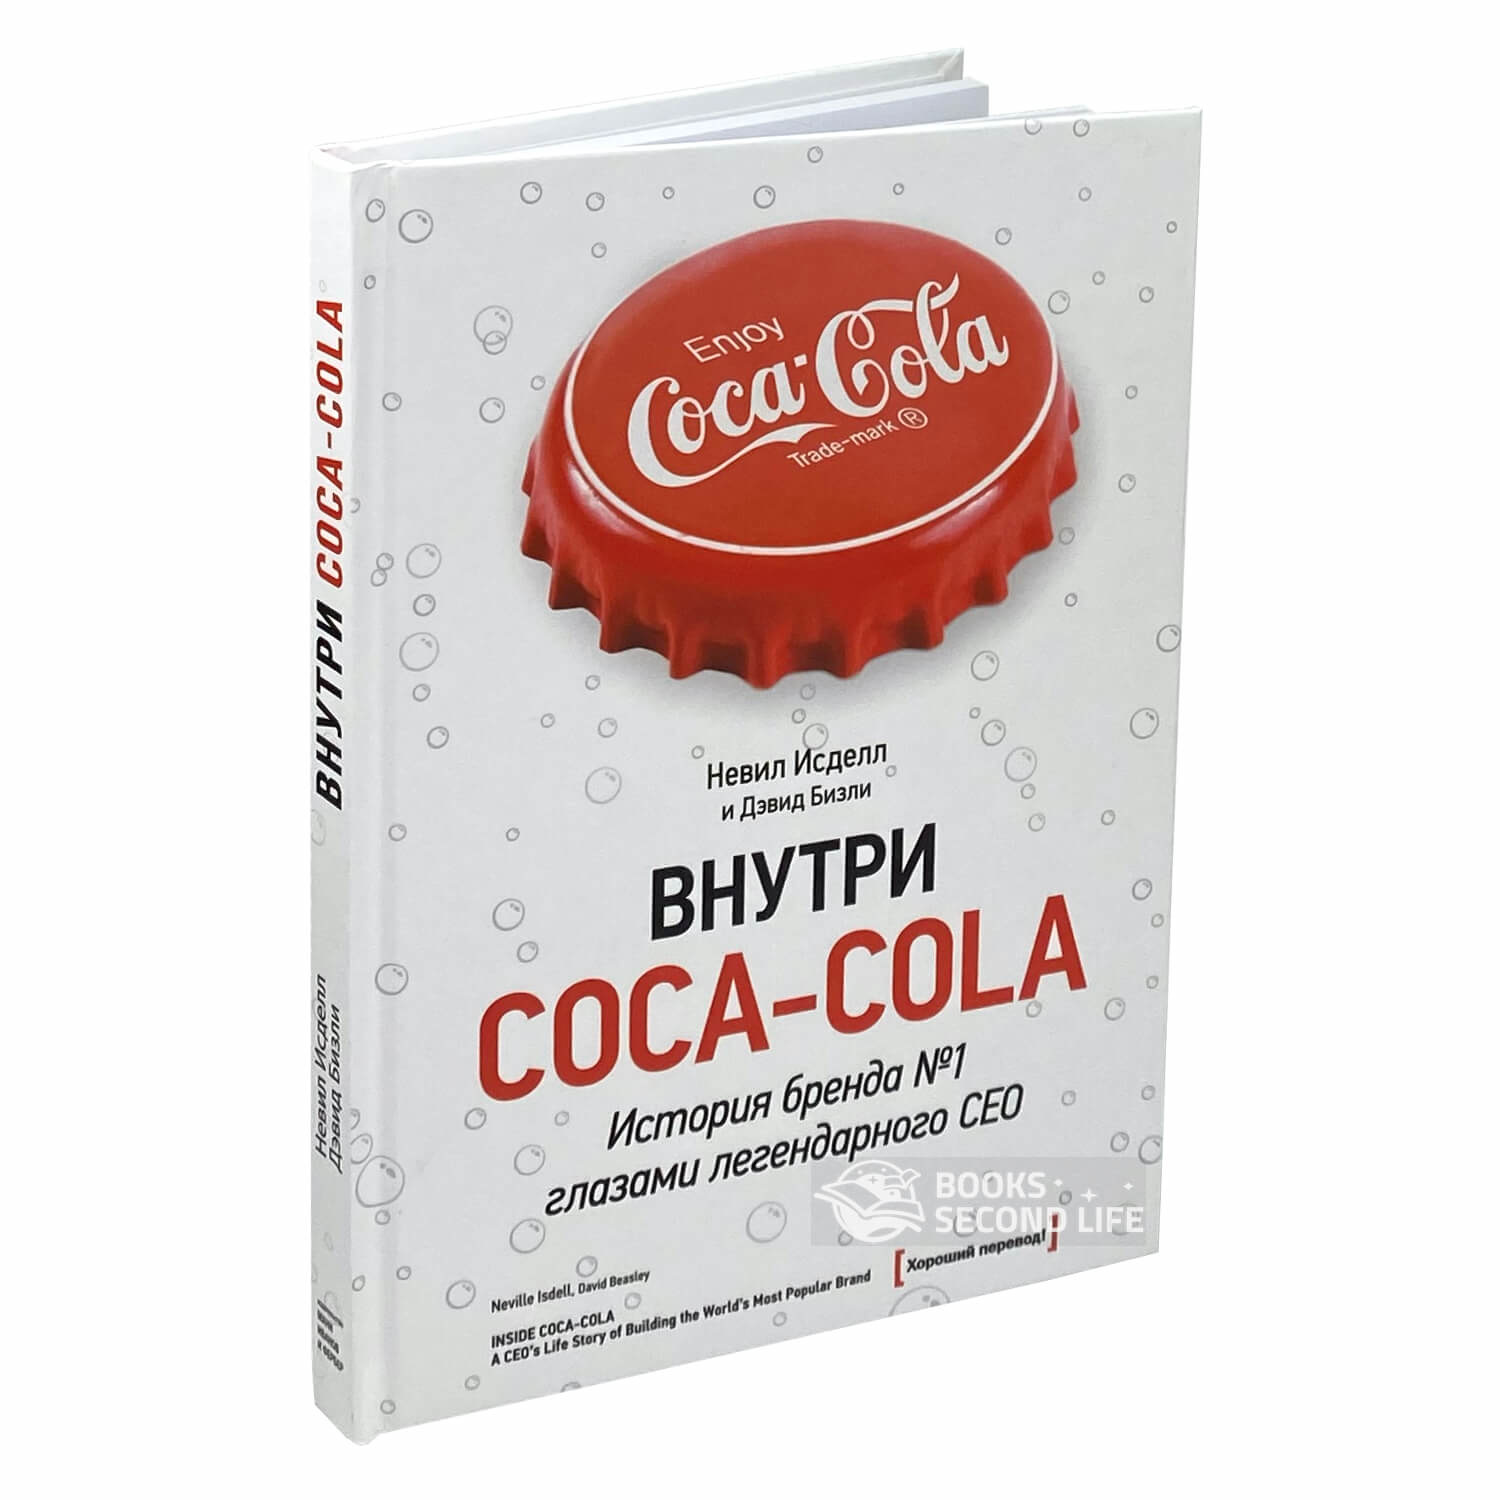 Внутри Coca - Cola. История бренда №1 глазами легендарного CEO. Автор — Невил Исделл, Дэвид Бизли. 